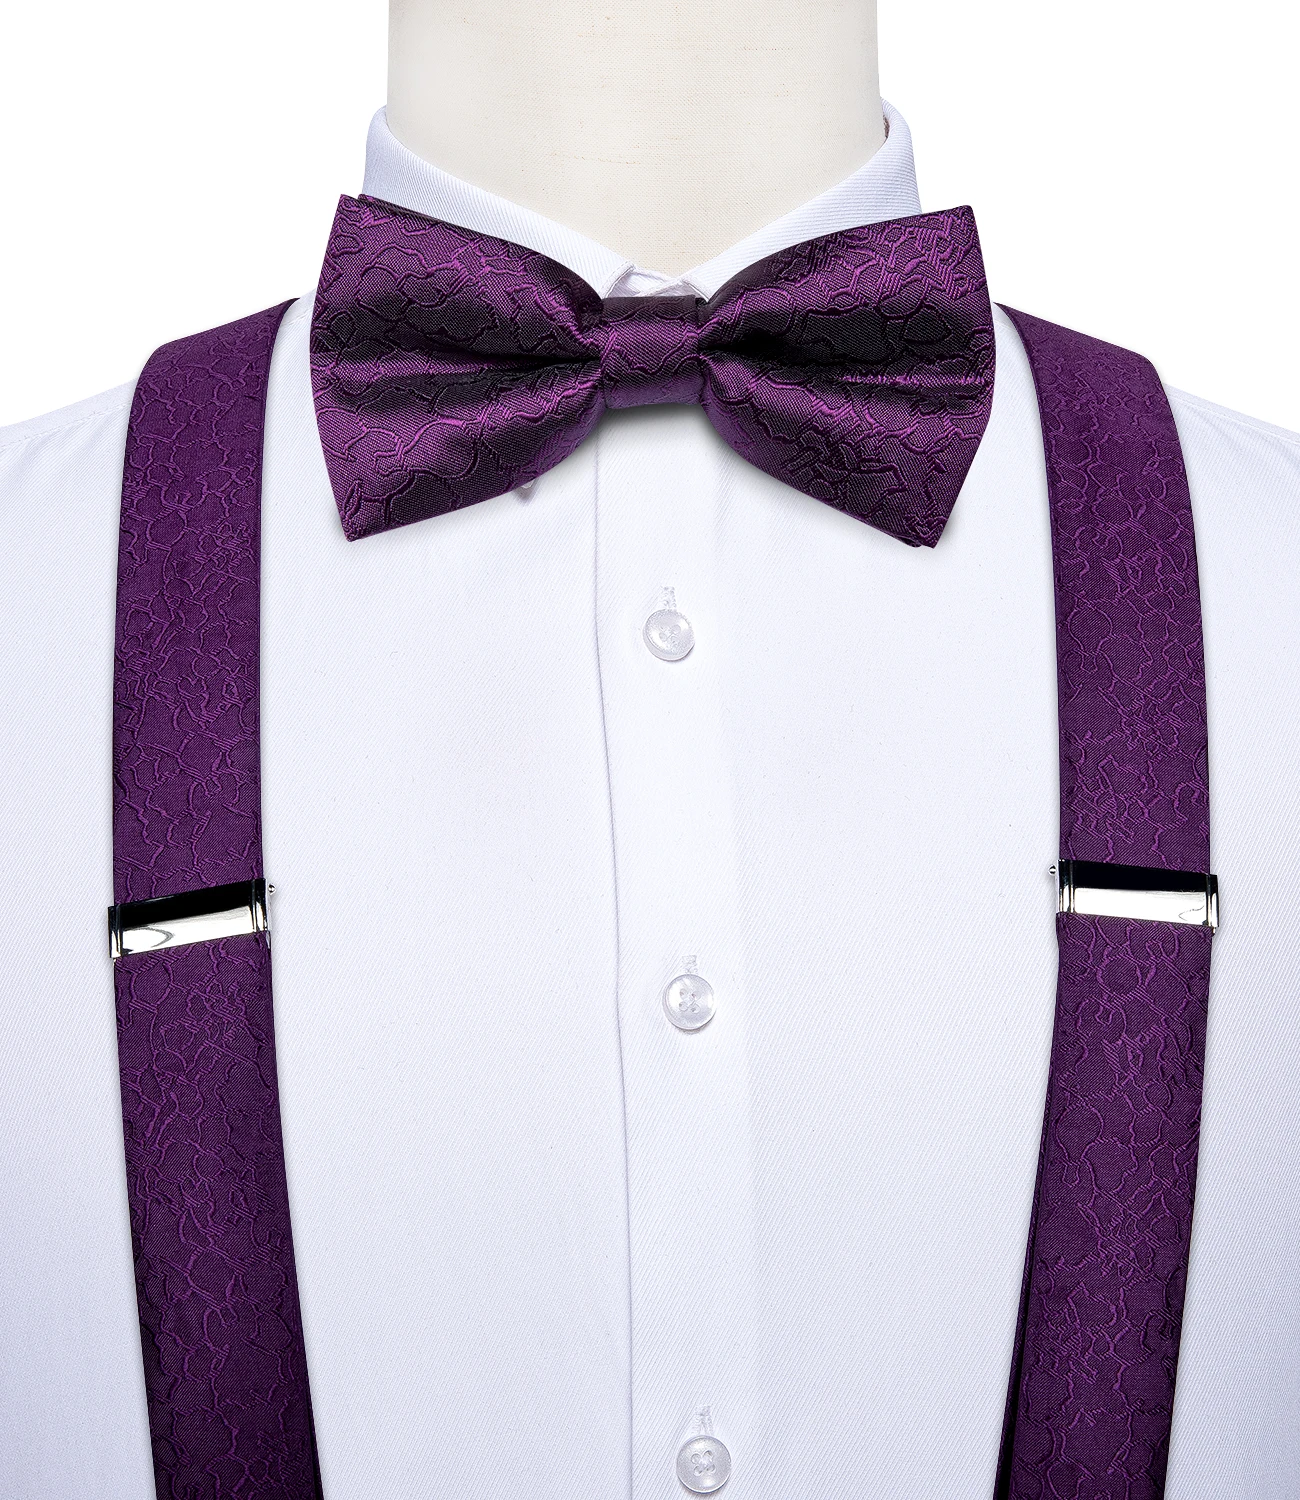 DiBanGu-Tirantes de seda púrpura de lujo para hombre, conjunto de 6 Clips ajustables de cuero y Metal, pajarita preatada, conjunto cuadrado de bolsillo #4008